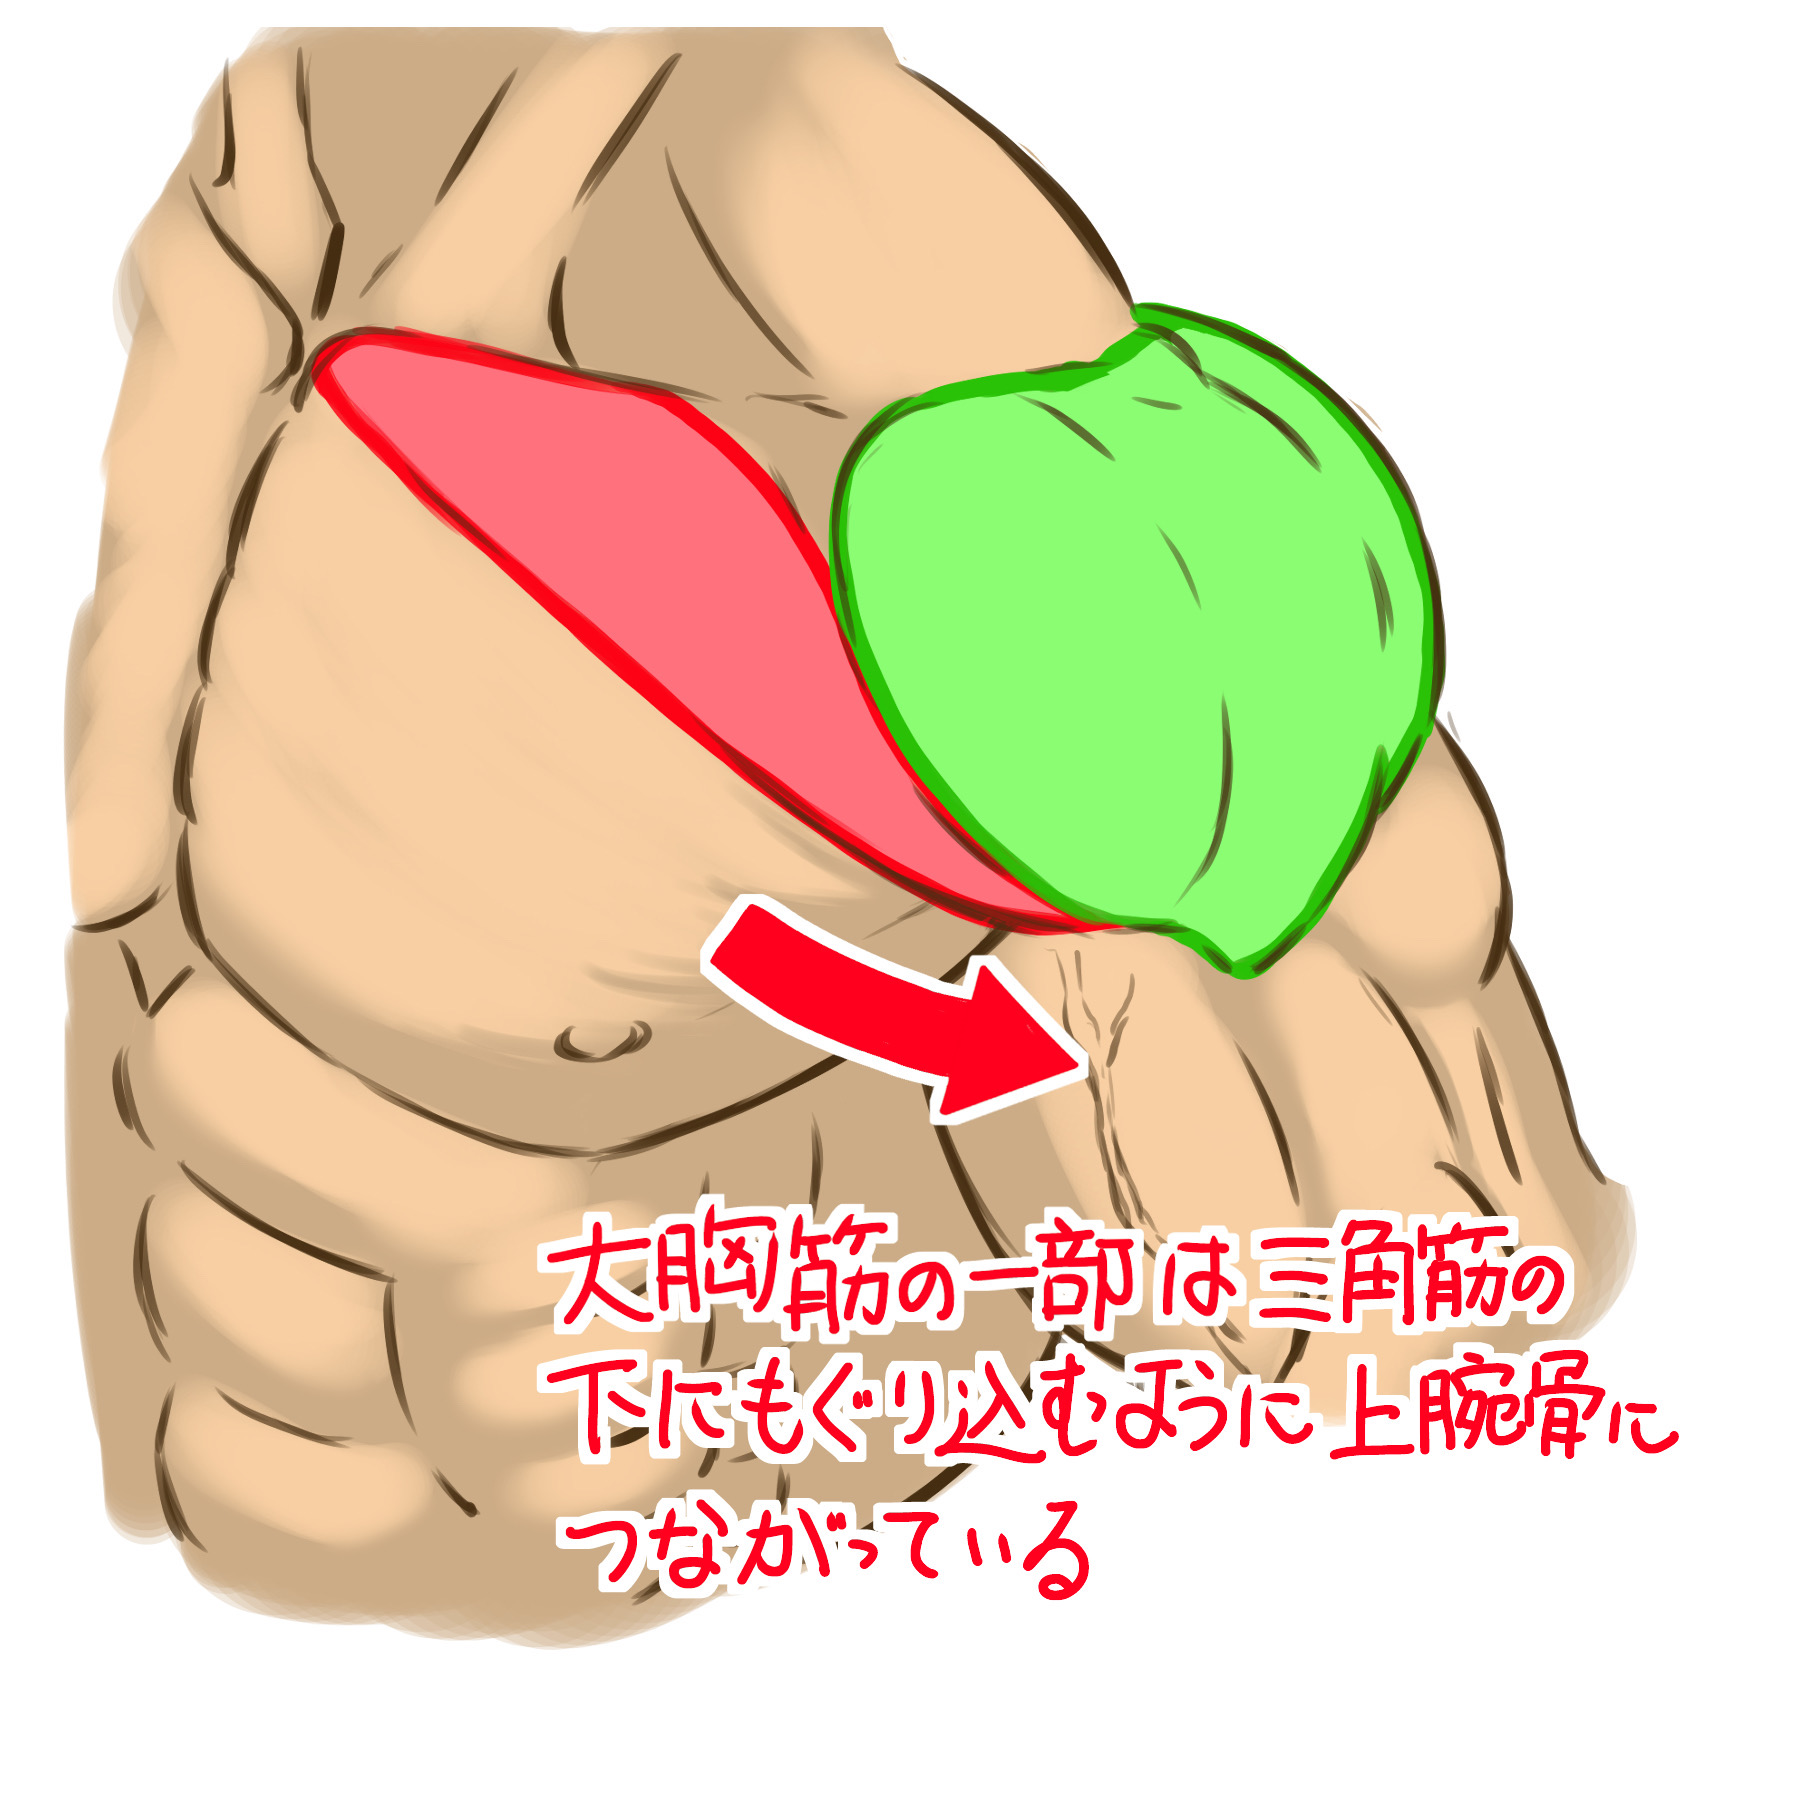 さらに、大胸筋の一部は肩の三角筋の下にもぐり込むように上腕骨へつながっていくので、見た目が三角筋の一部のように見えます。